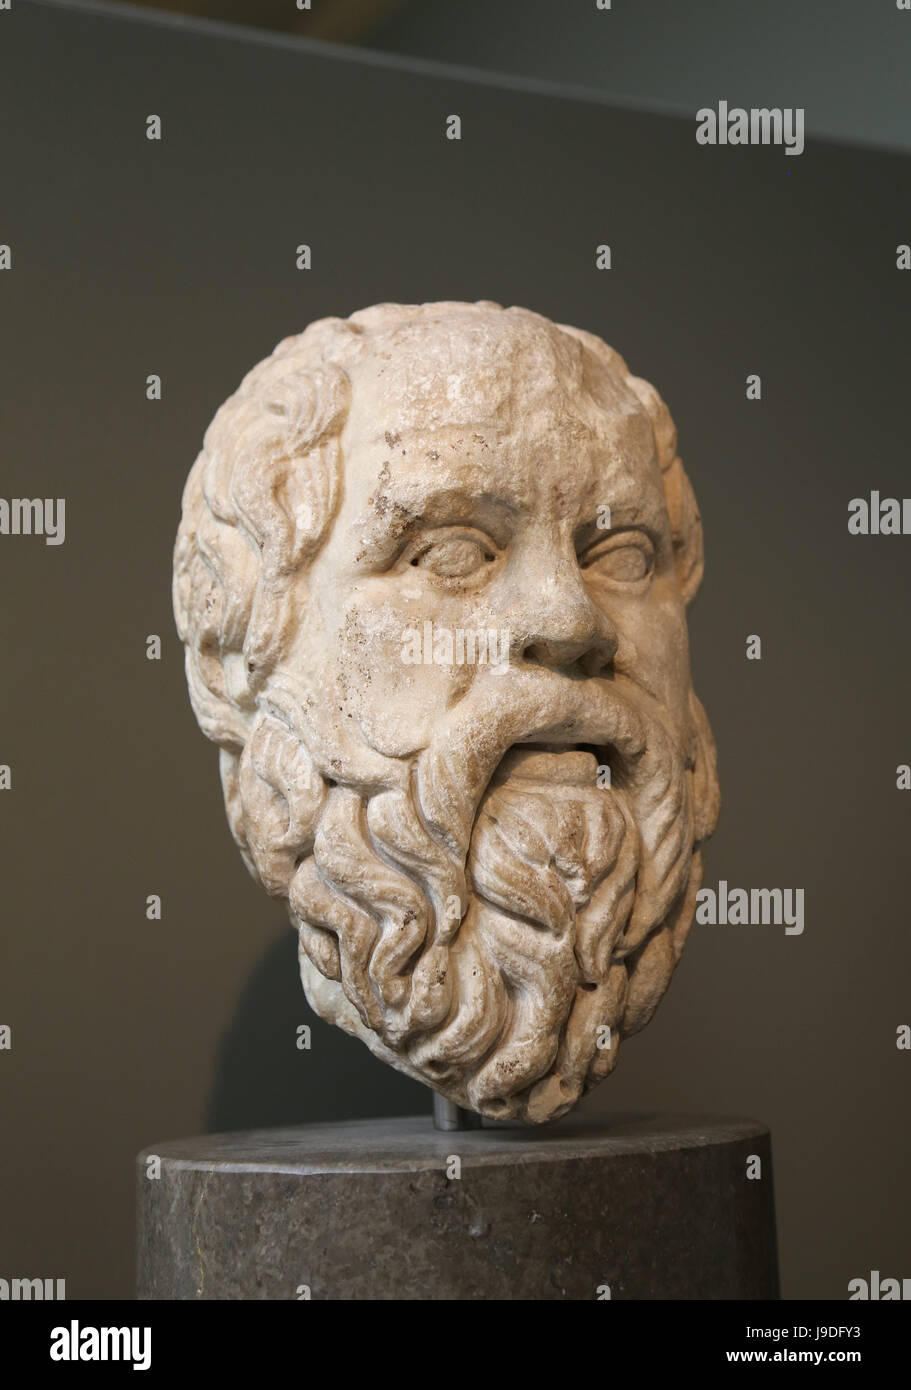 Sócrates (469-399 a.C.). Filósofo griego clásico. Copia romana del original griego, 380-360 AC. Museo Británico. Londres. Reino Unido. Foto de stock